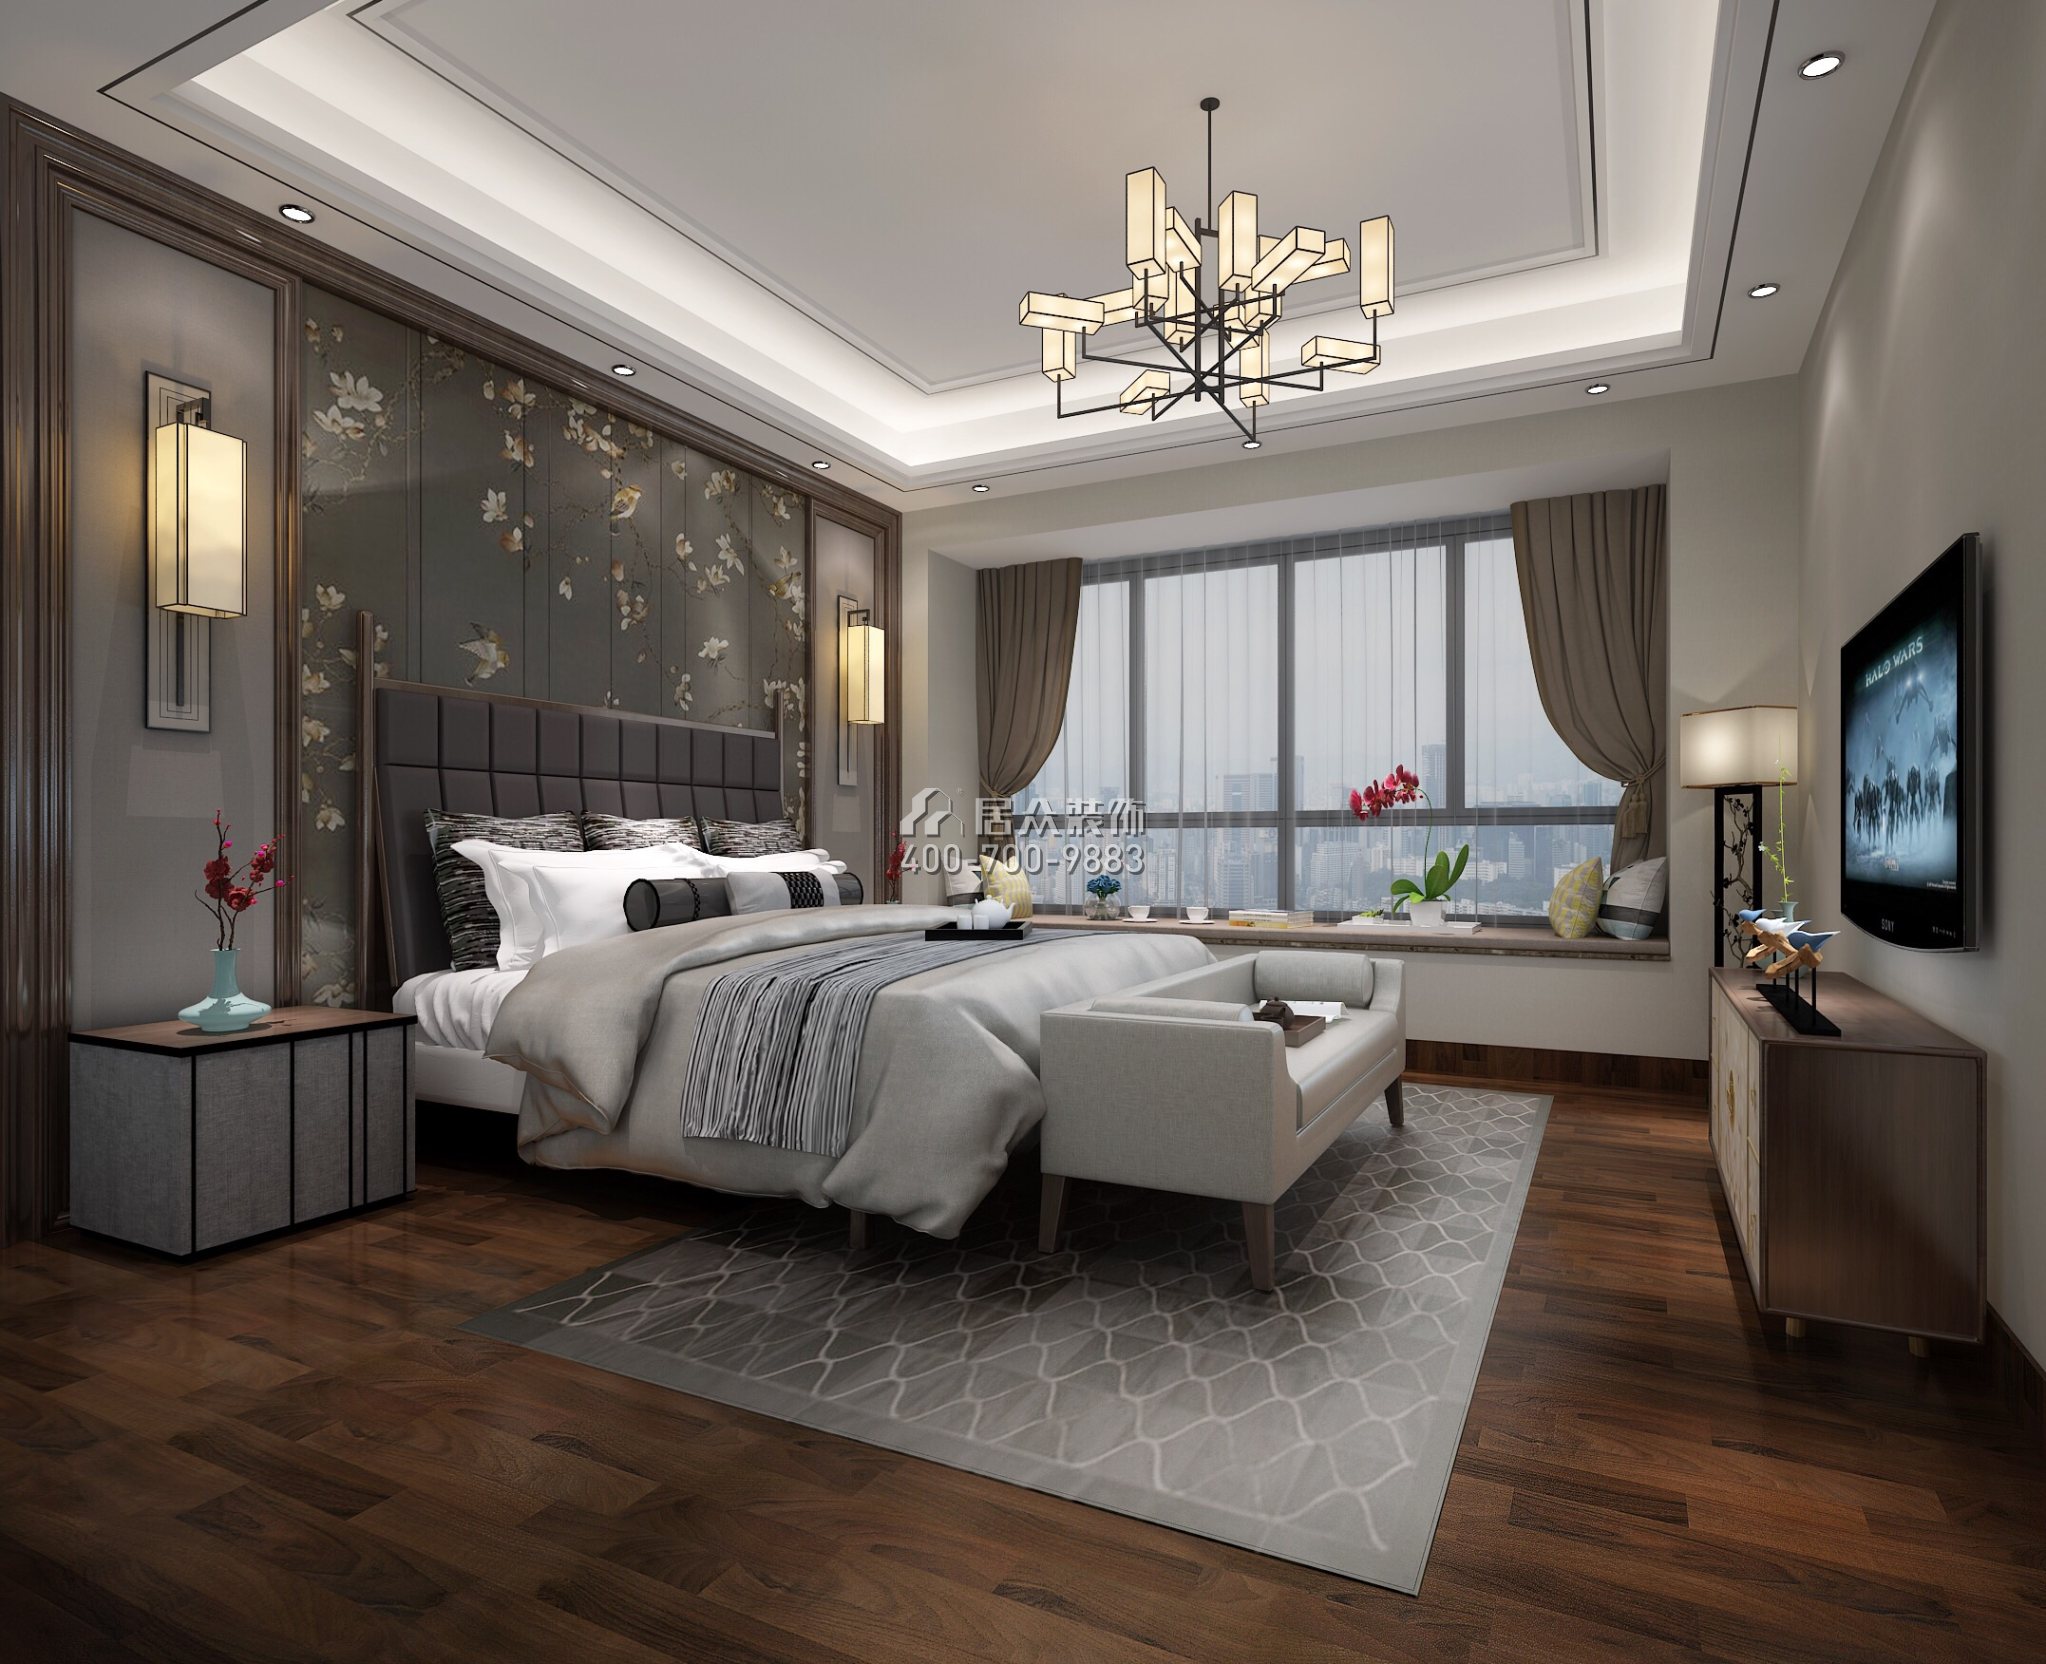 廣州華發四季200平方米中式風格平層戶型臥室裝修效果圖